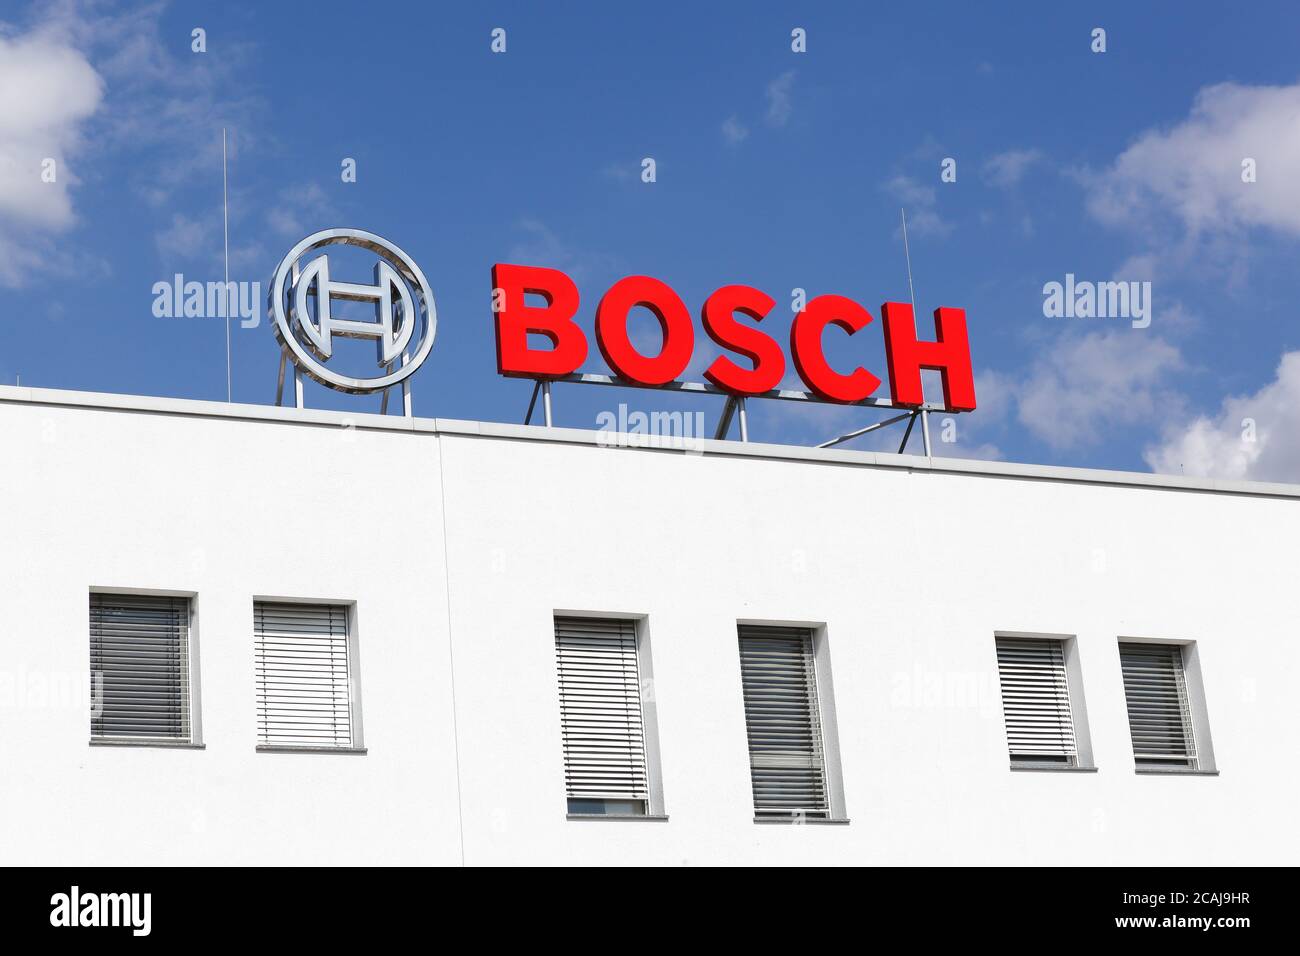 Frechen, Alemania - 2 de septiembre de 2018: Logotipo de Bosch en un edificio. Bosch es una multinacional alemana de ingeniería y electrónica Foto de stock